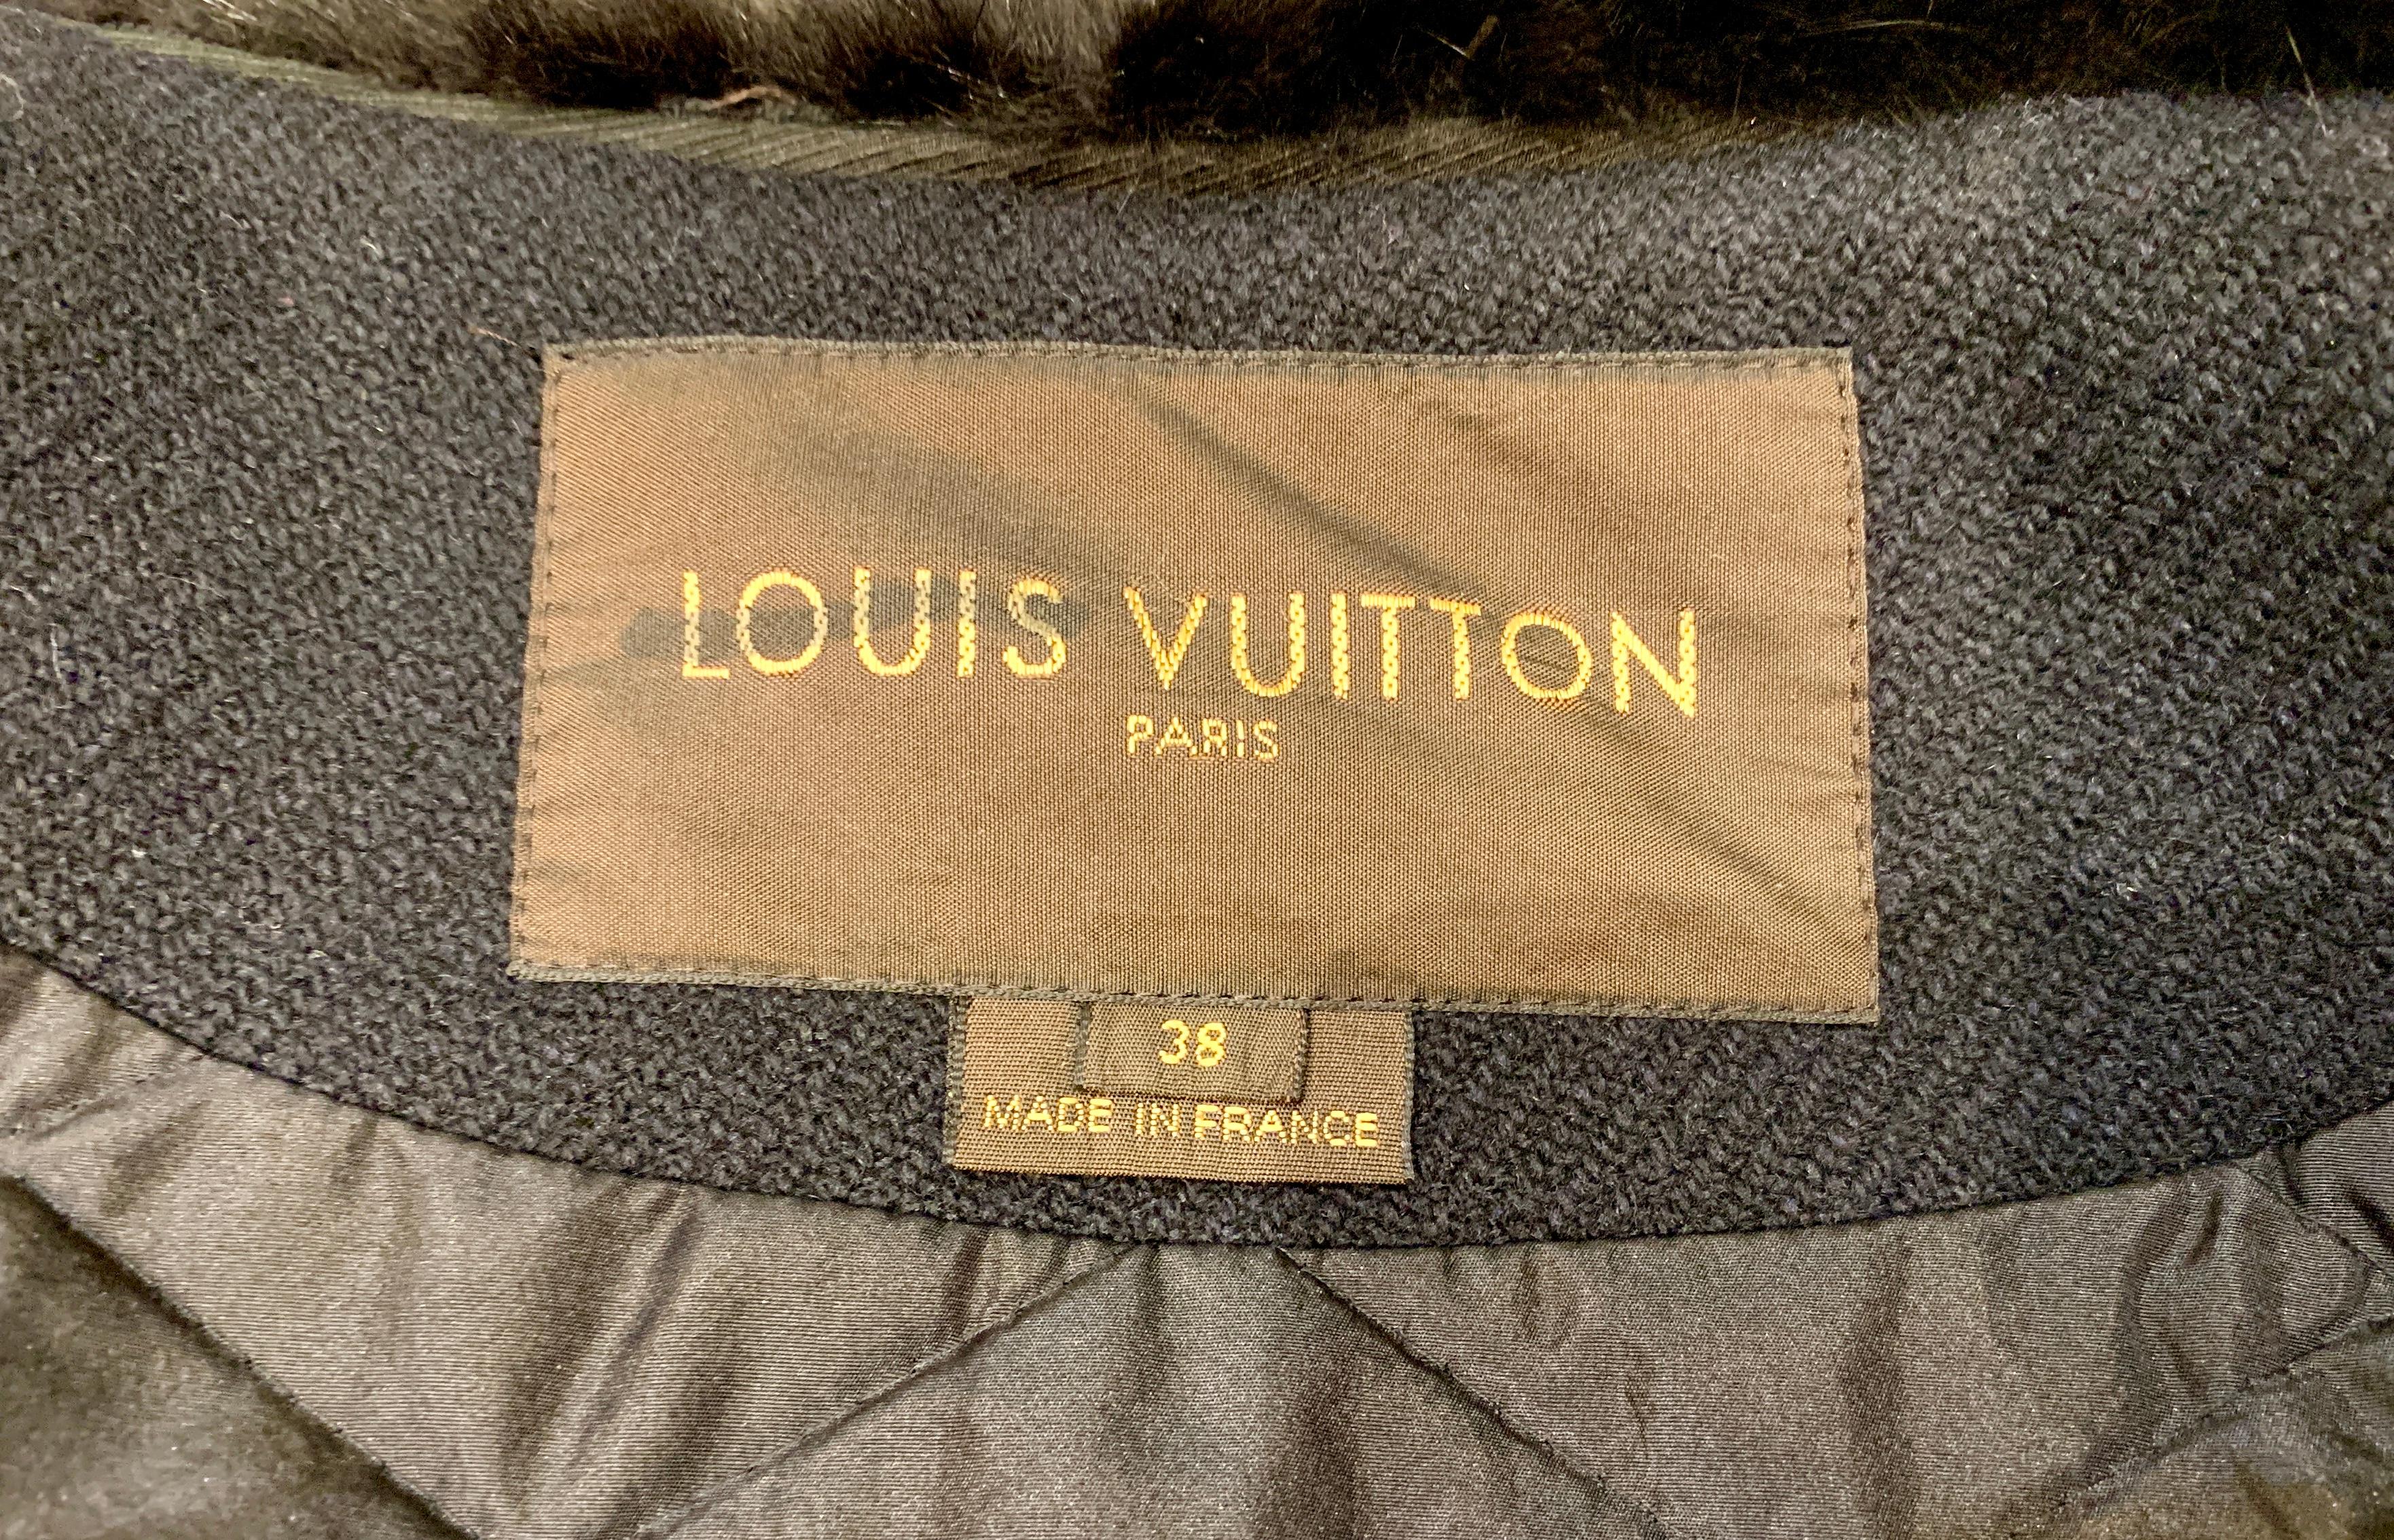 Der elegante Damenmantel von Louis Vuitton Paris besteht aus schwarzer Wolle mit einem großen, opulenten schwarzen Nerzpelzkragen und einem weichen Kaninchenfellbesatz am Revers. Der Mantel ist auf der Rückseite mit gestepptem Polyamid gefüttert und